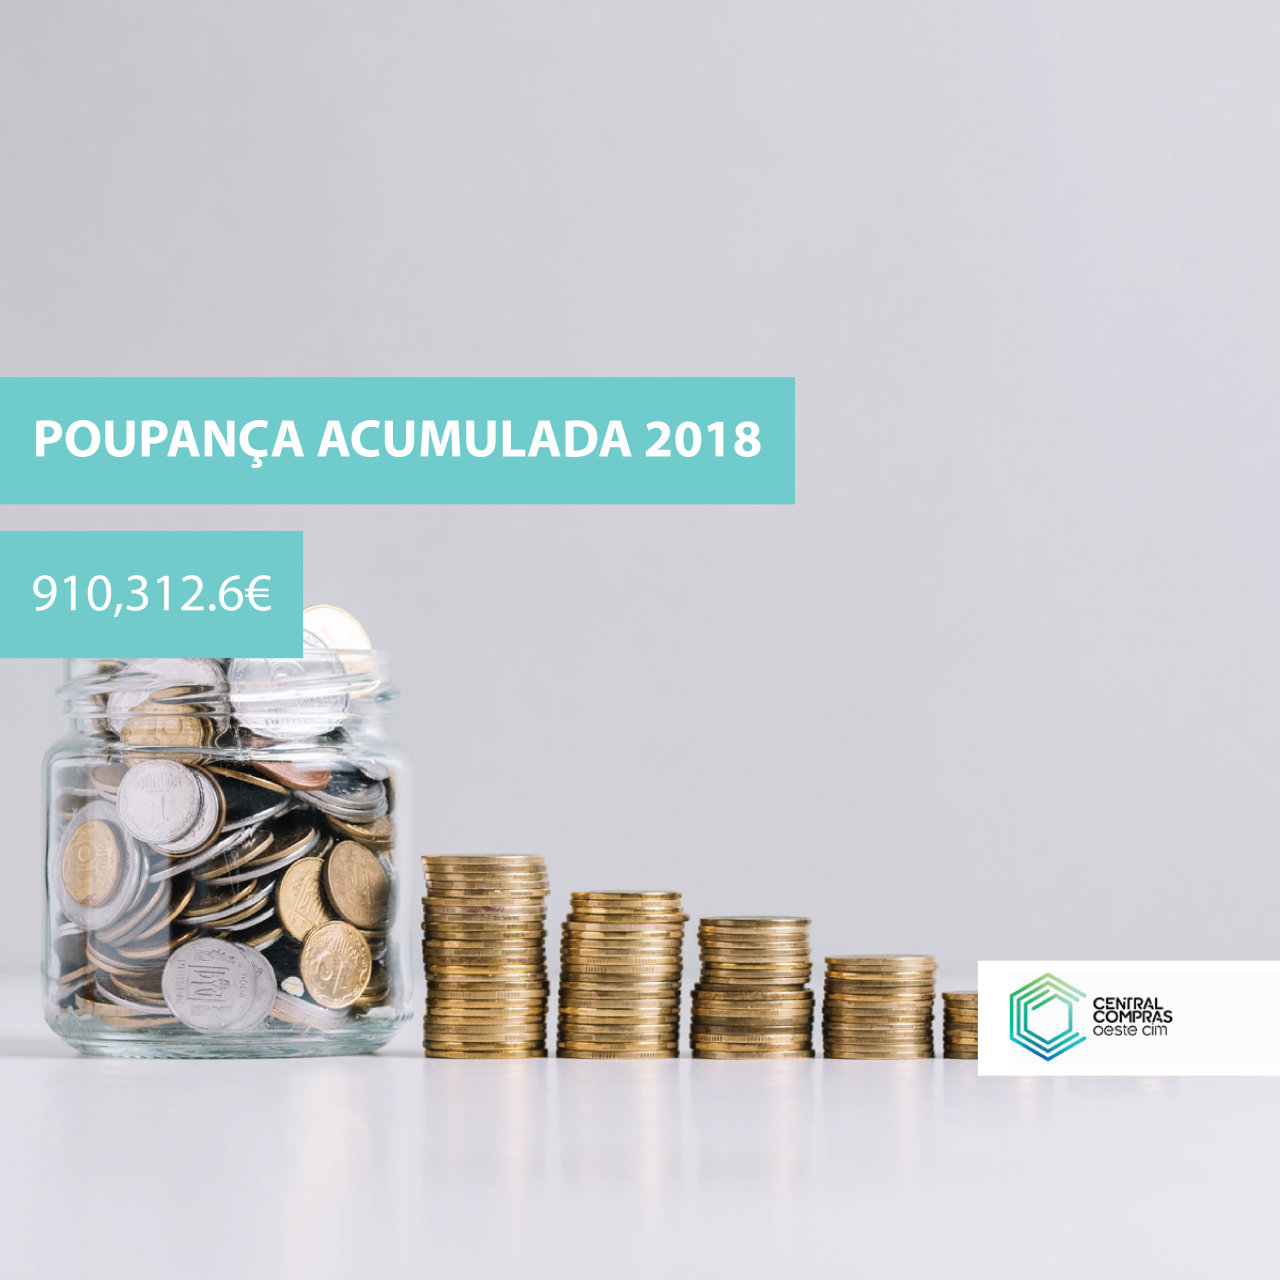 Poupança acumulada ultrapassa os 900.000€, em 2018